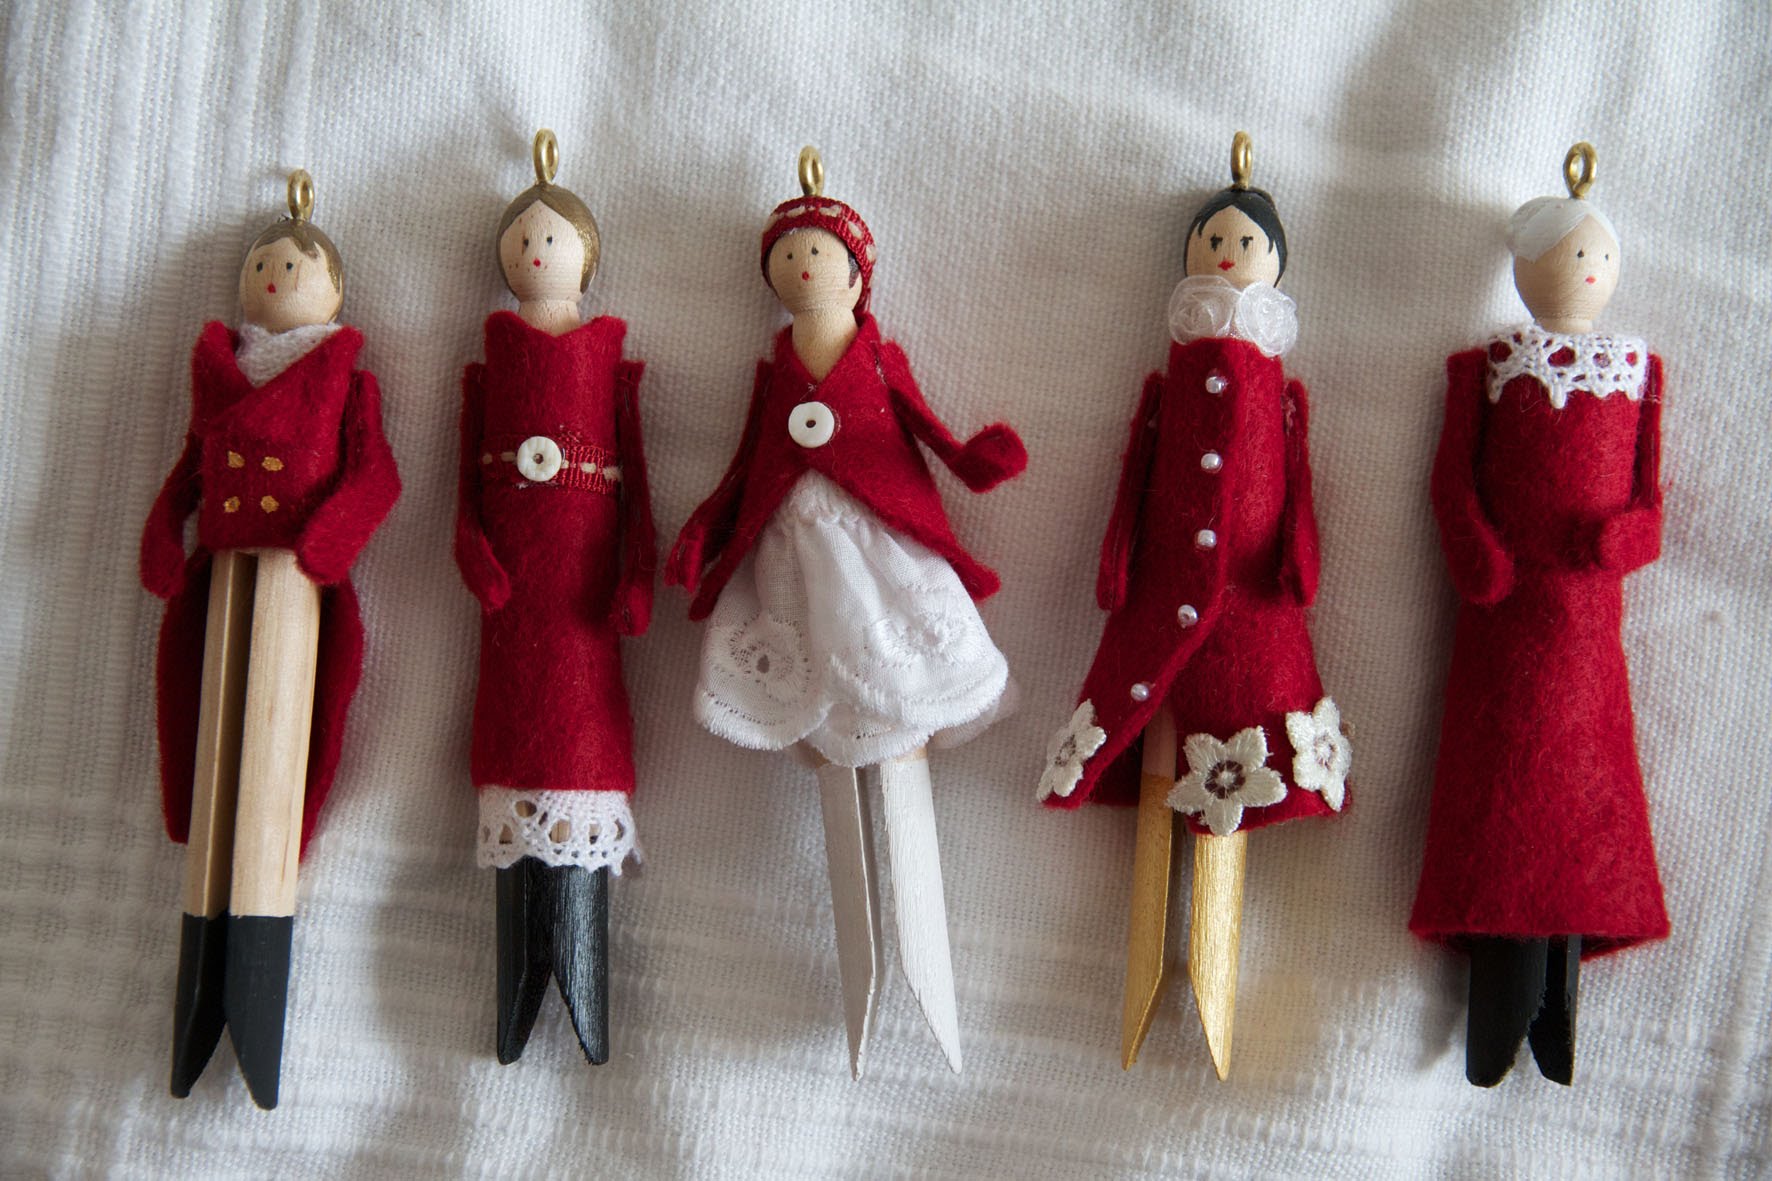 Christmas doll ornaments - Petites poupées de Noël - YouTube